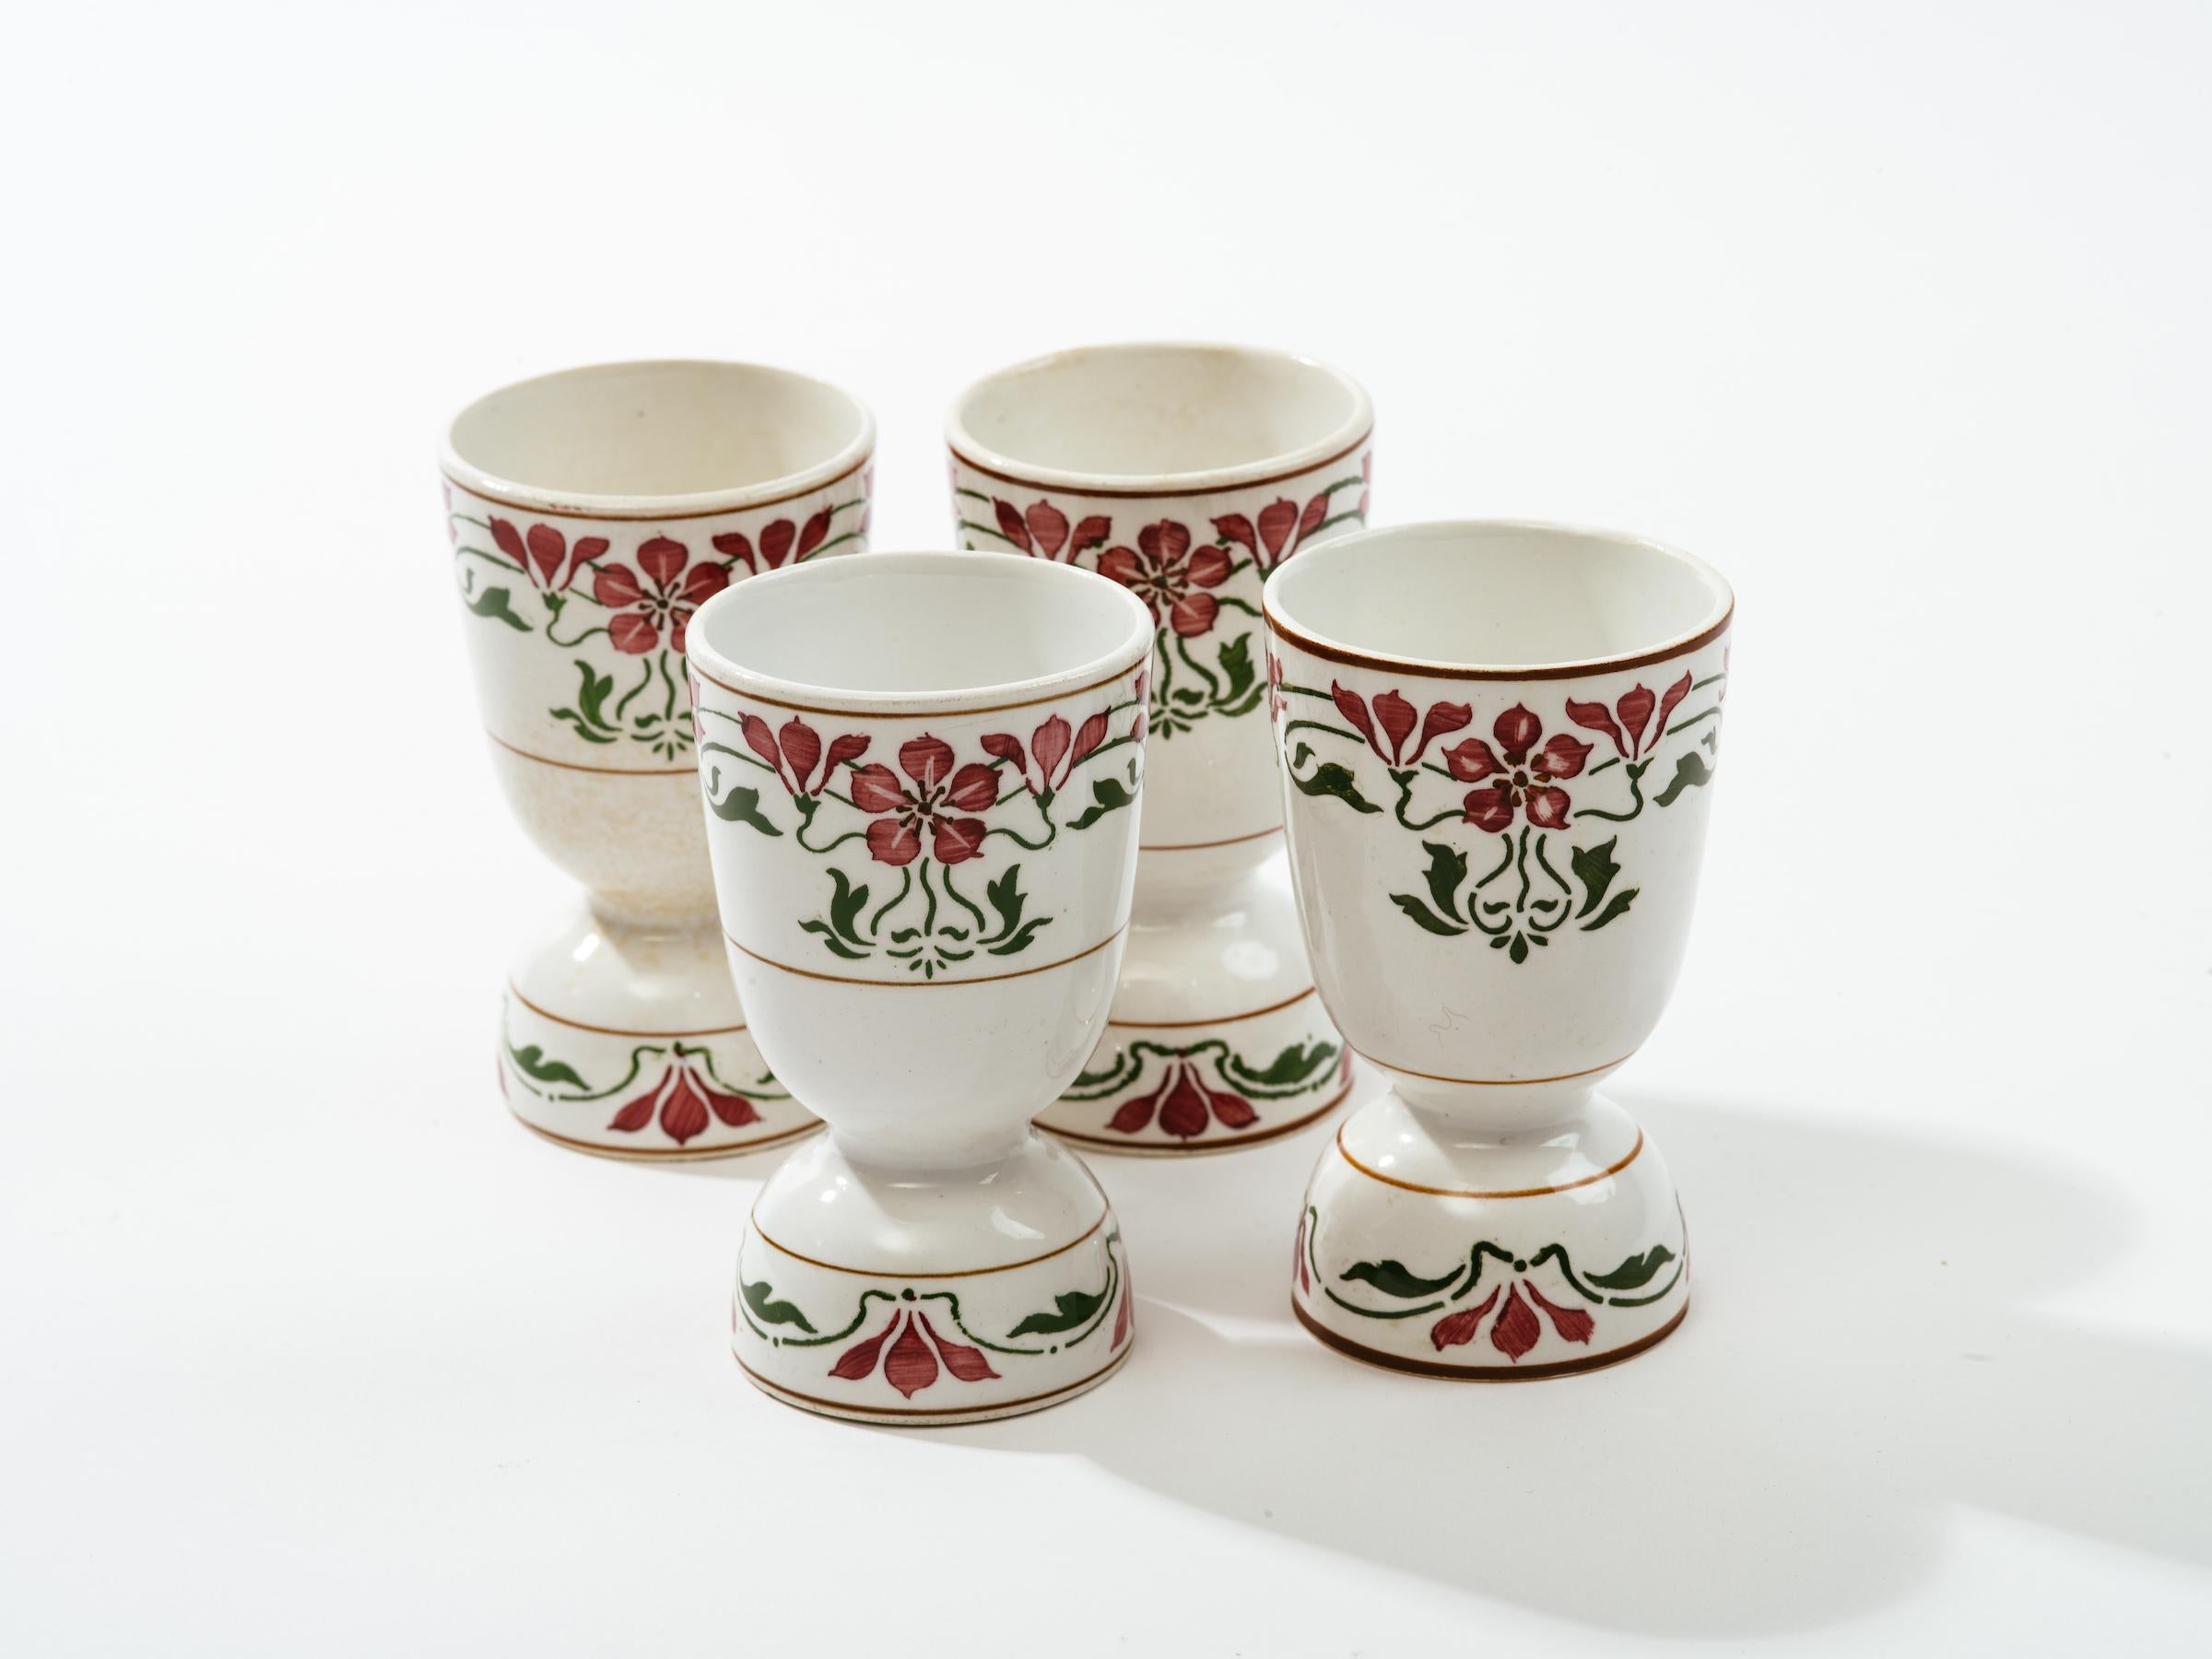 Ensemble de quatre coquetiers en porcelaine Jugendstil Saxony Poppy de Villeroy et Boch, Dresde,
Allemagne, datant entre 1874- 1909. Magnifique motif de fleurs stylisées Art Nouveau tout autour de tasses en porcelaine blanche.